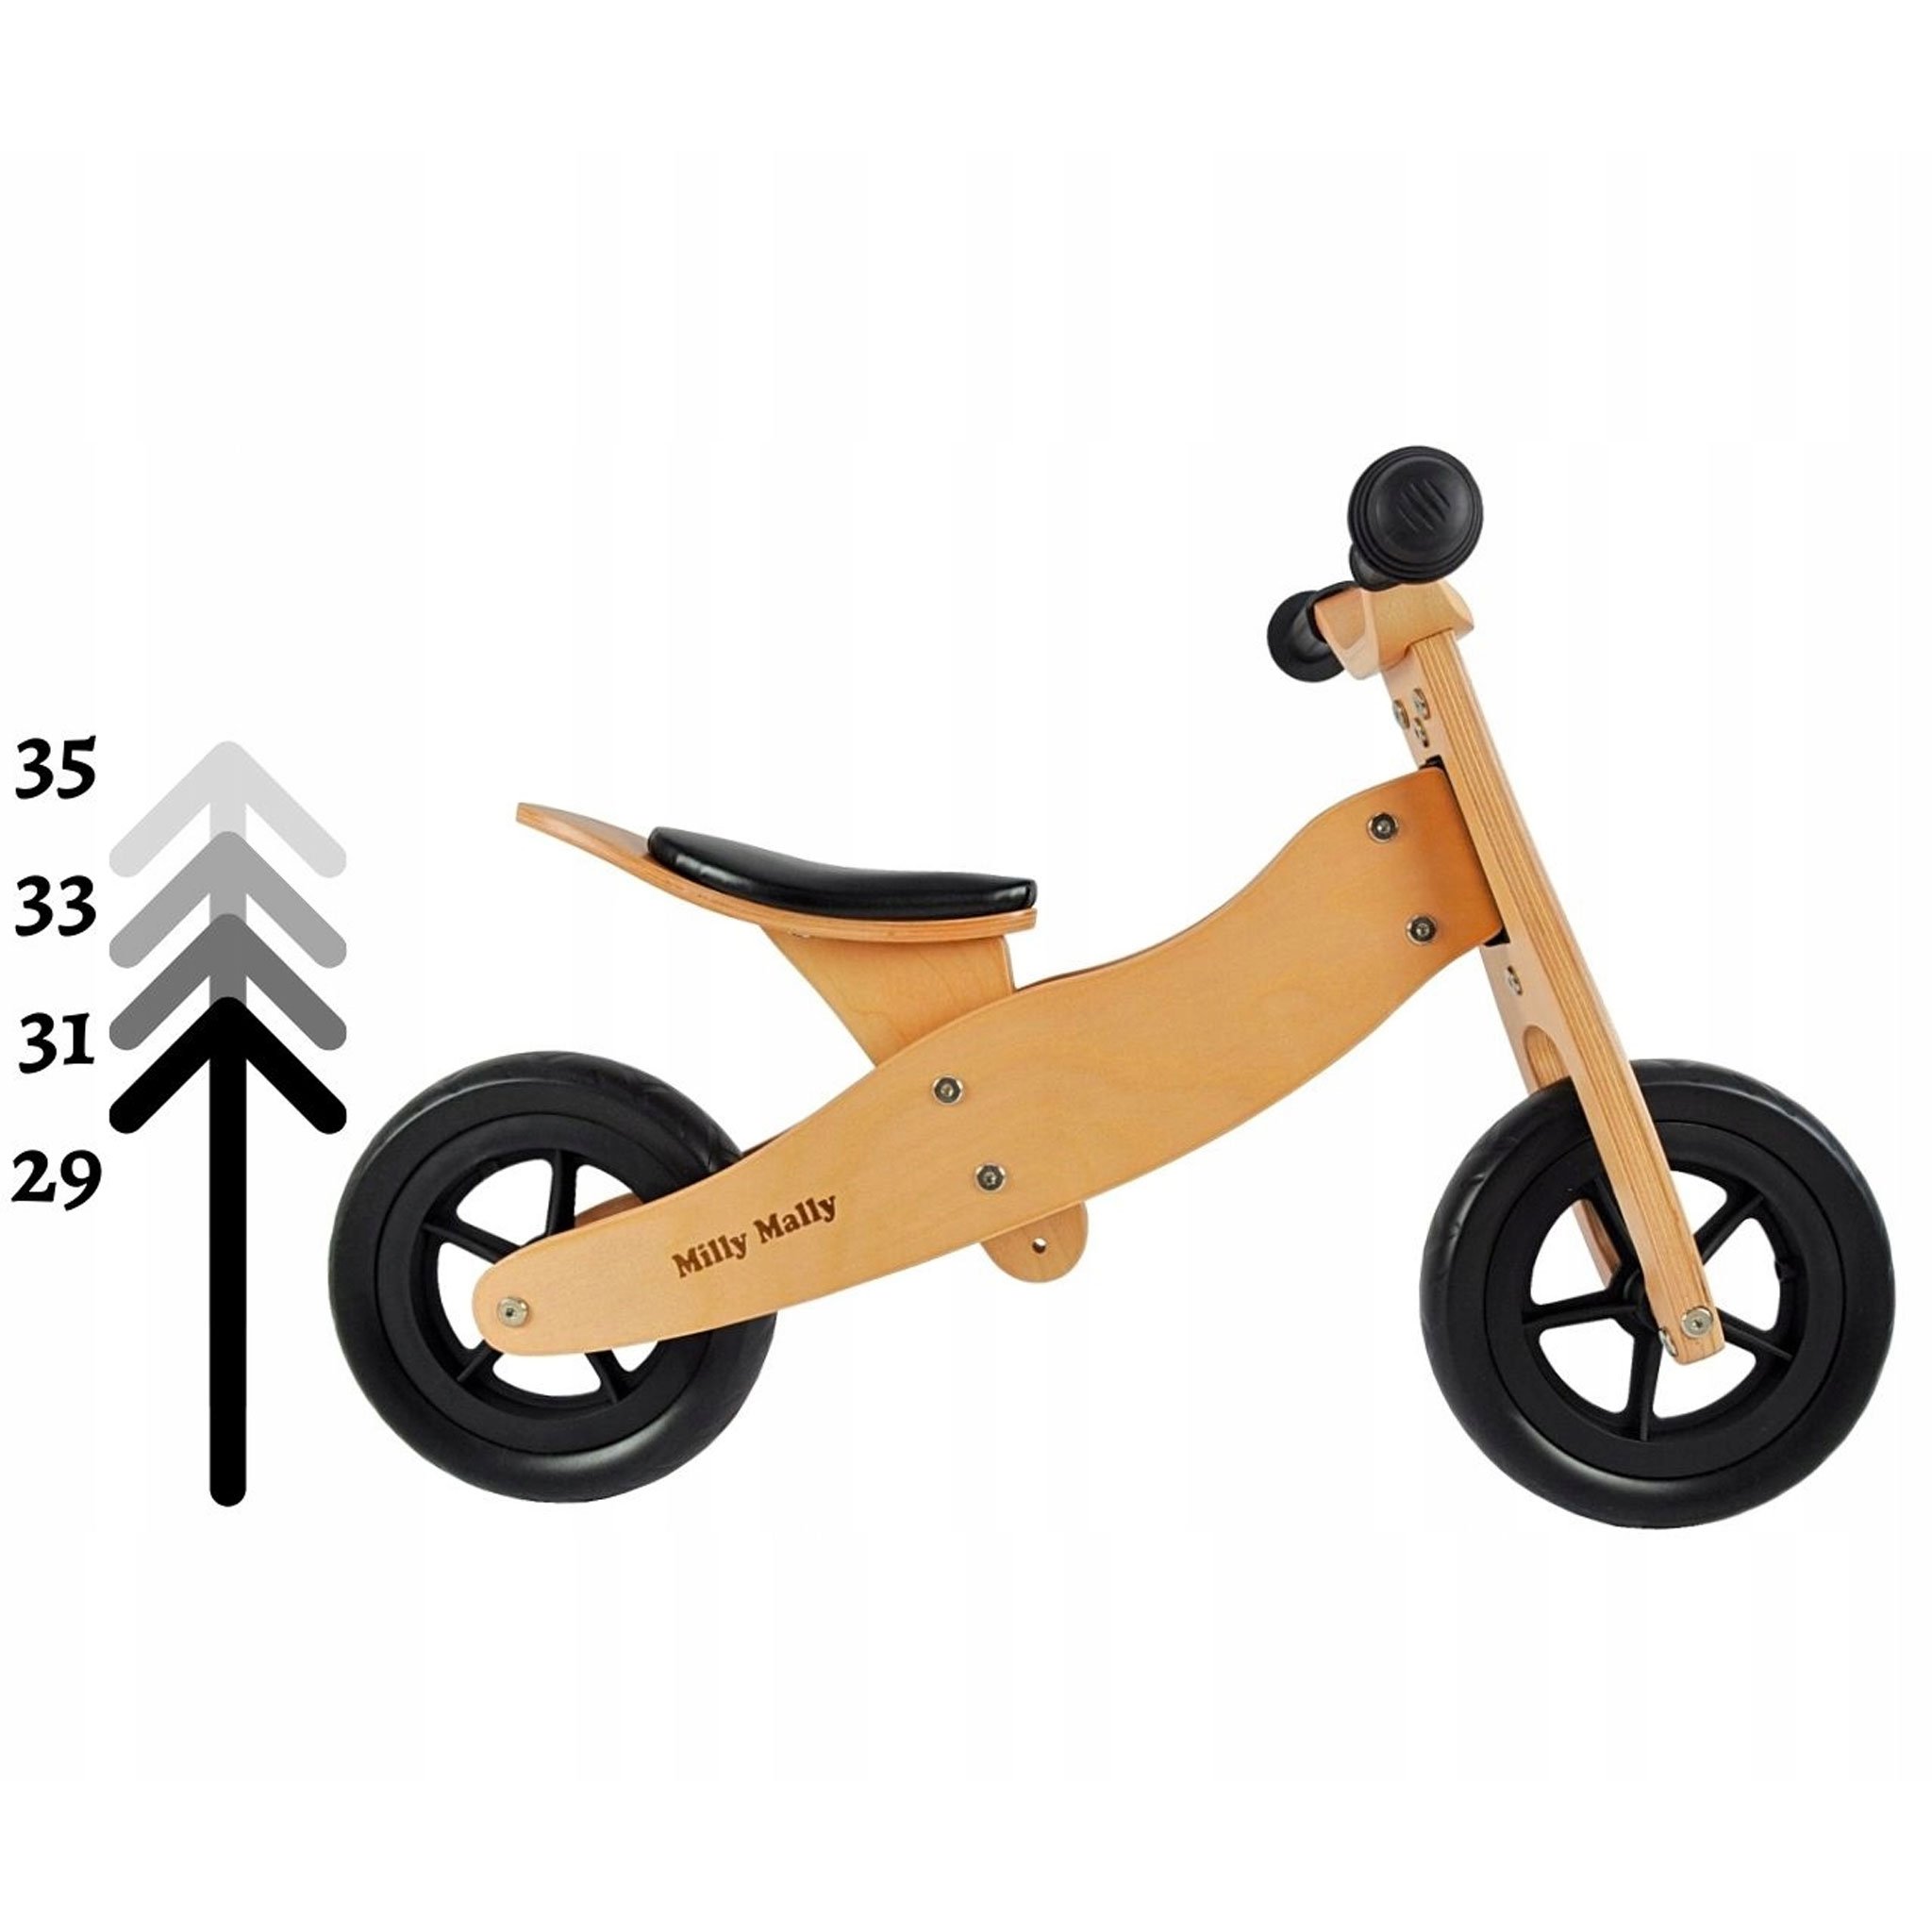 PM2770-triciclo-legno-cavalcabile-ruote-bici-senza-pedali-bambini-equilibrio-balance-bike-giochi-esterno-mobilita-crescita-legno-betulla-all-terrain-trasforma-lato-casa-prodotto-misure-sella-regolazione.jpg